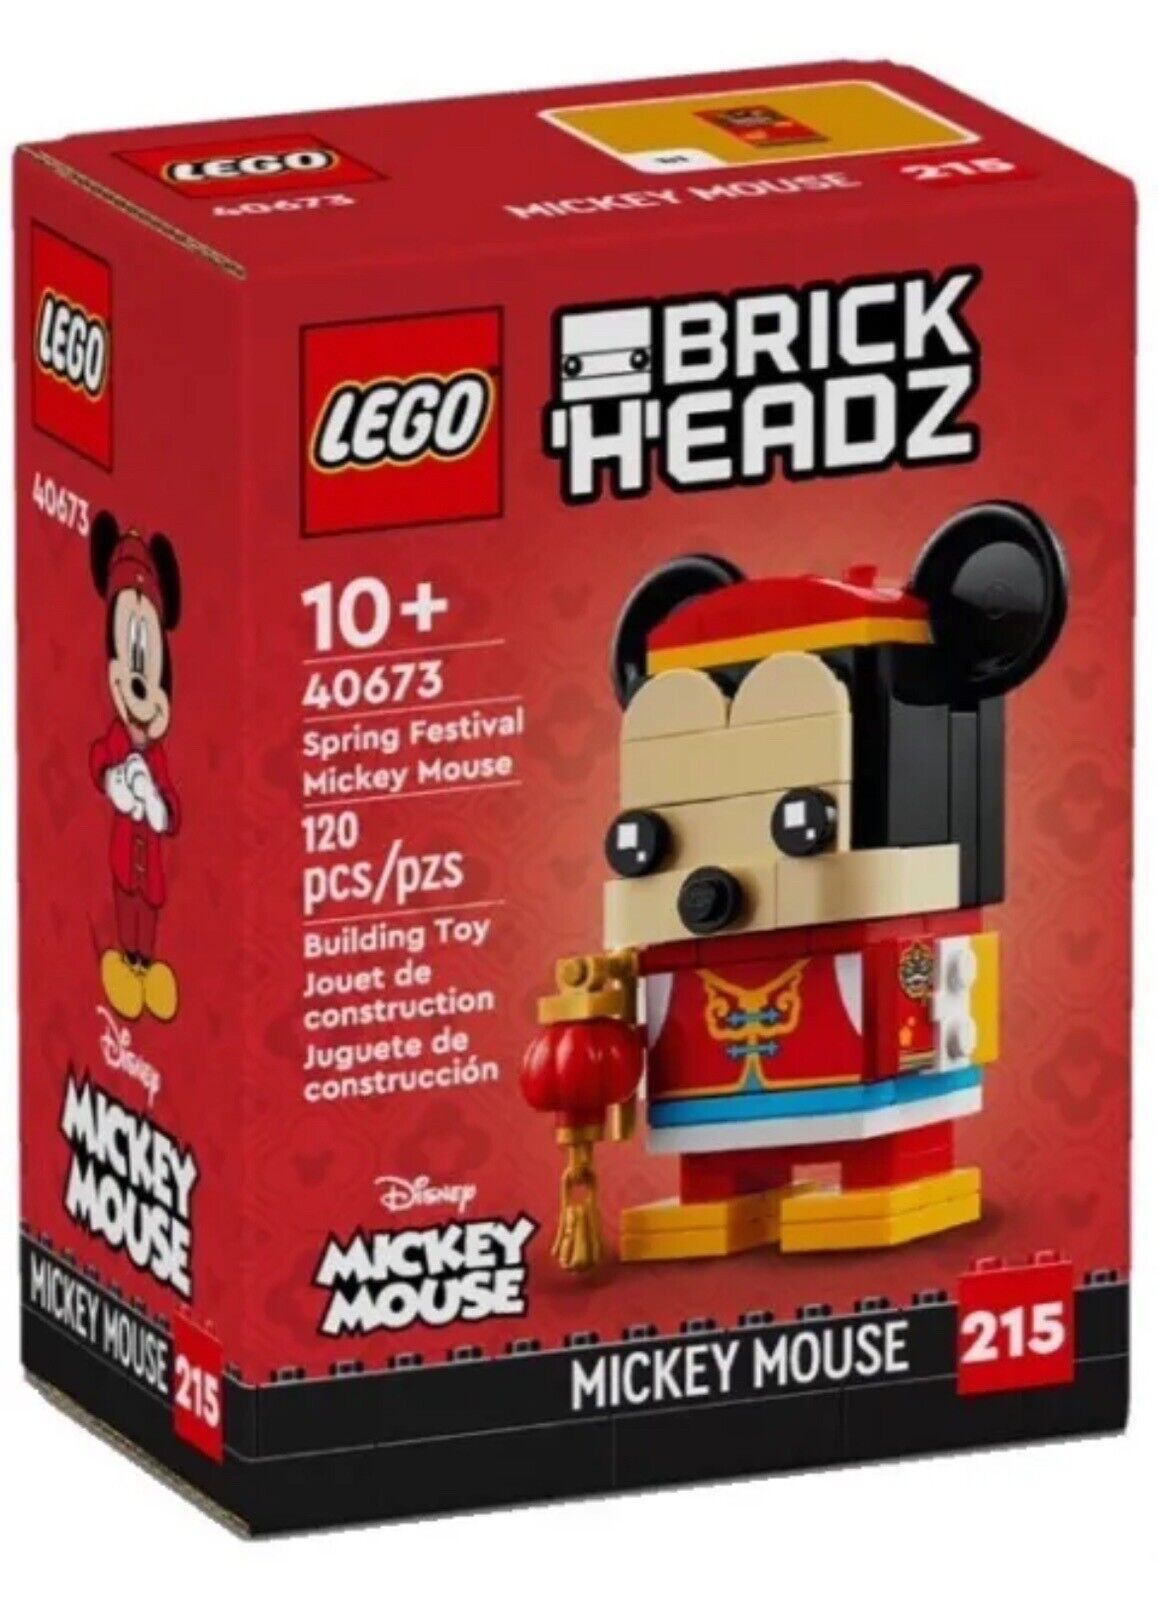 Конструктор LEGO BrickHeadz Весенний фестиваль Микки Мауса 40673, 120 дет. lego art конструктор disney s mickey mouse